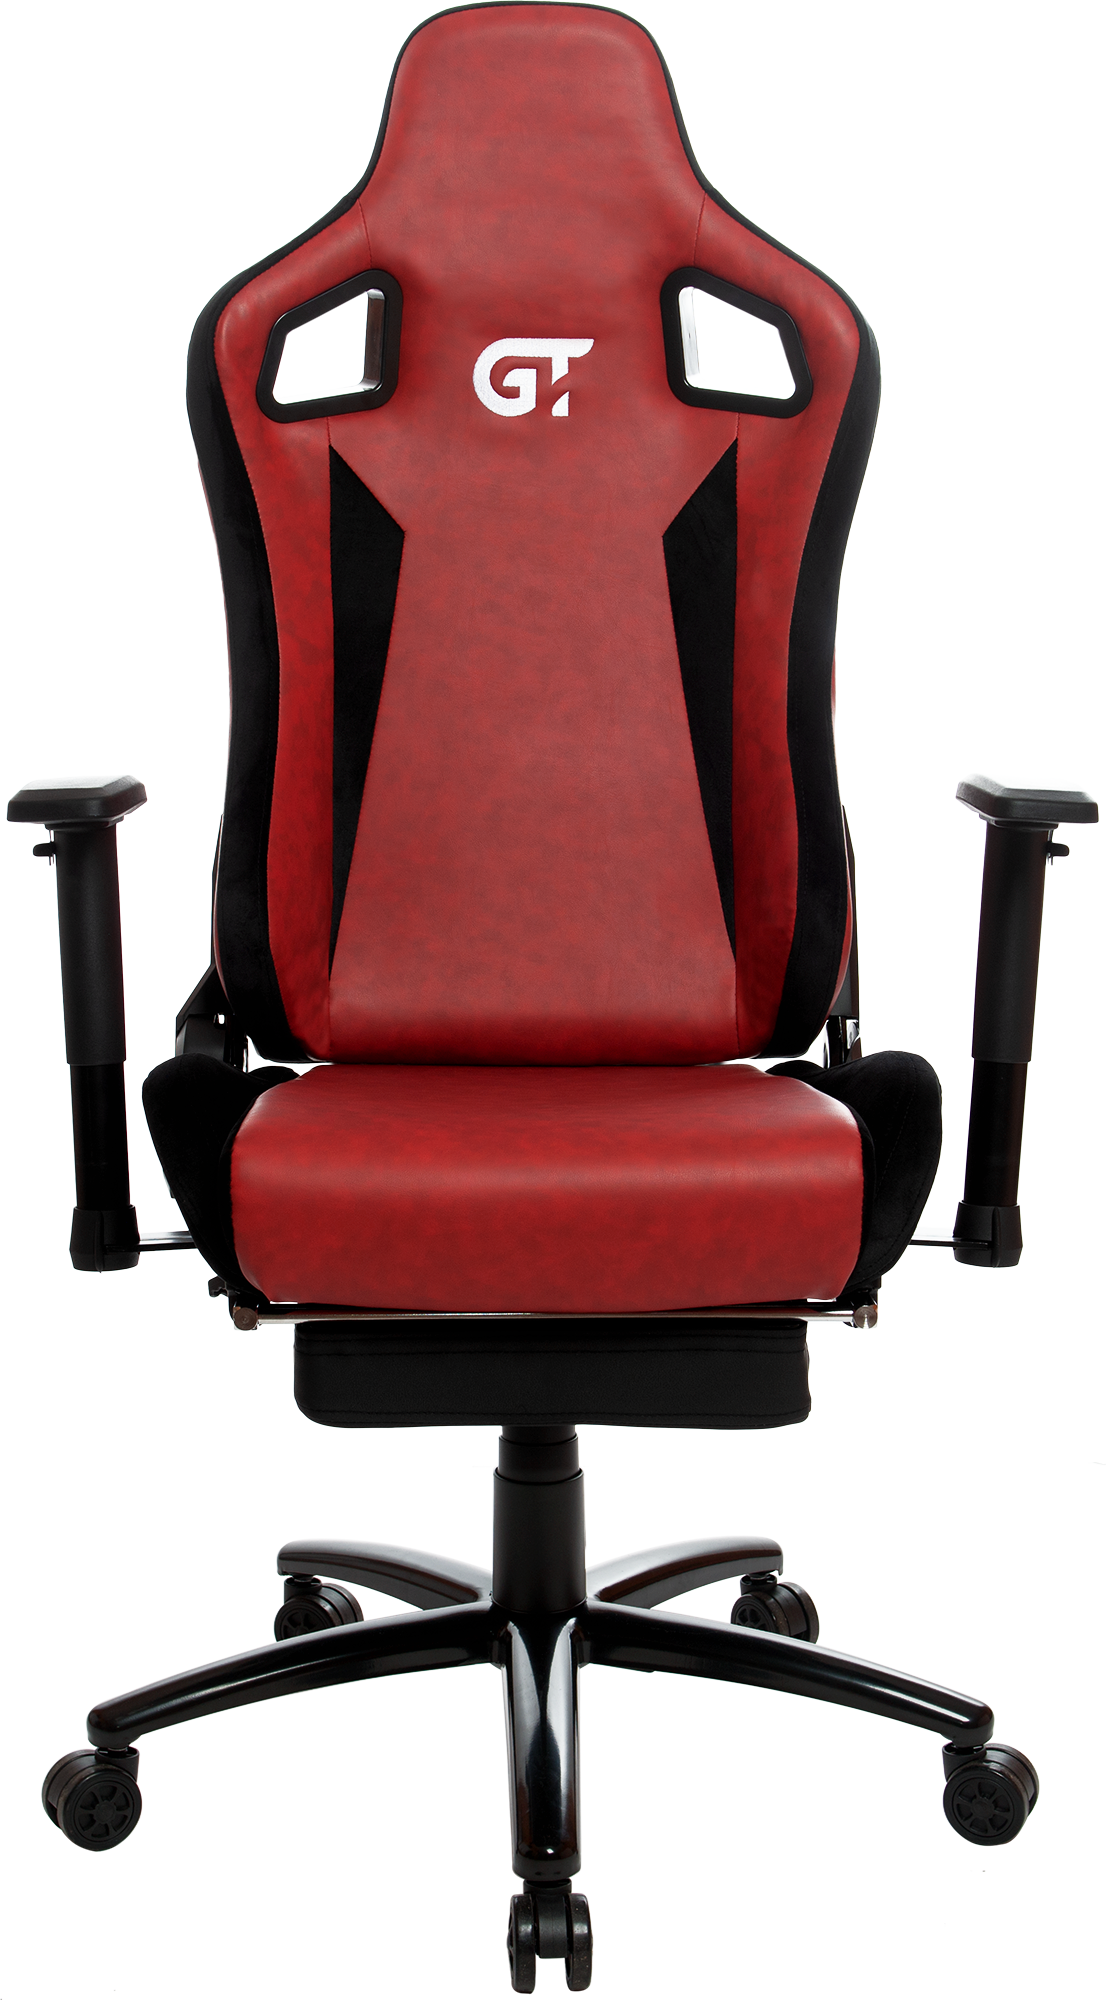 Геймерське крісло GT Racer чорне з червоним (X-5107 Black/Coral) - фото 2